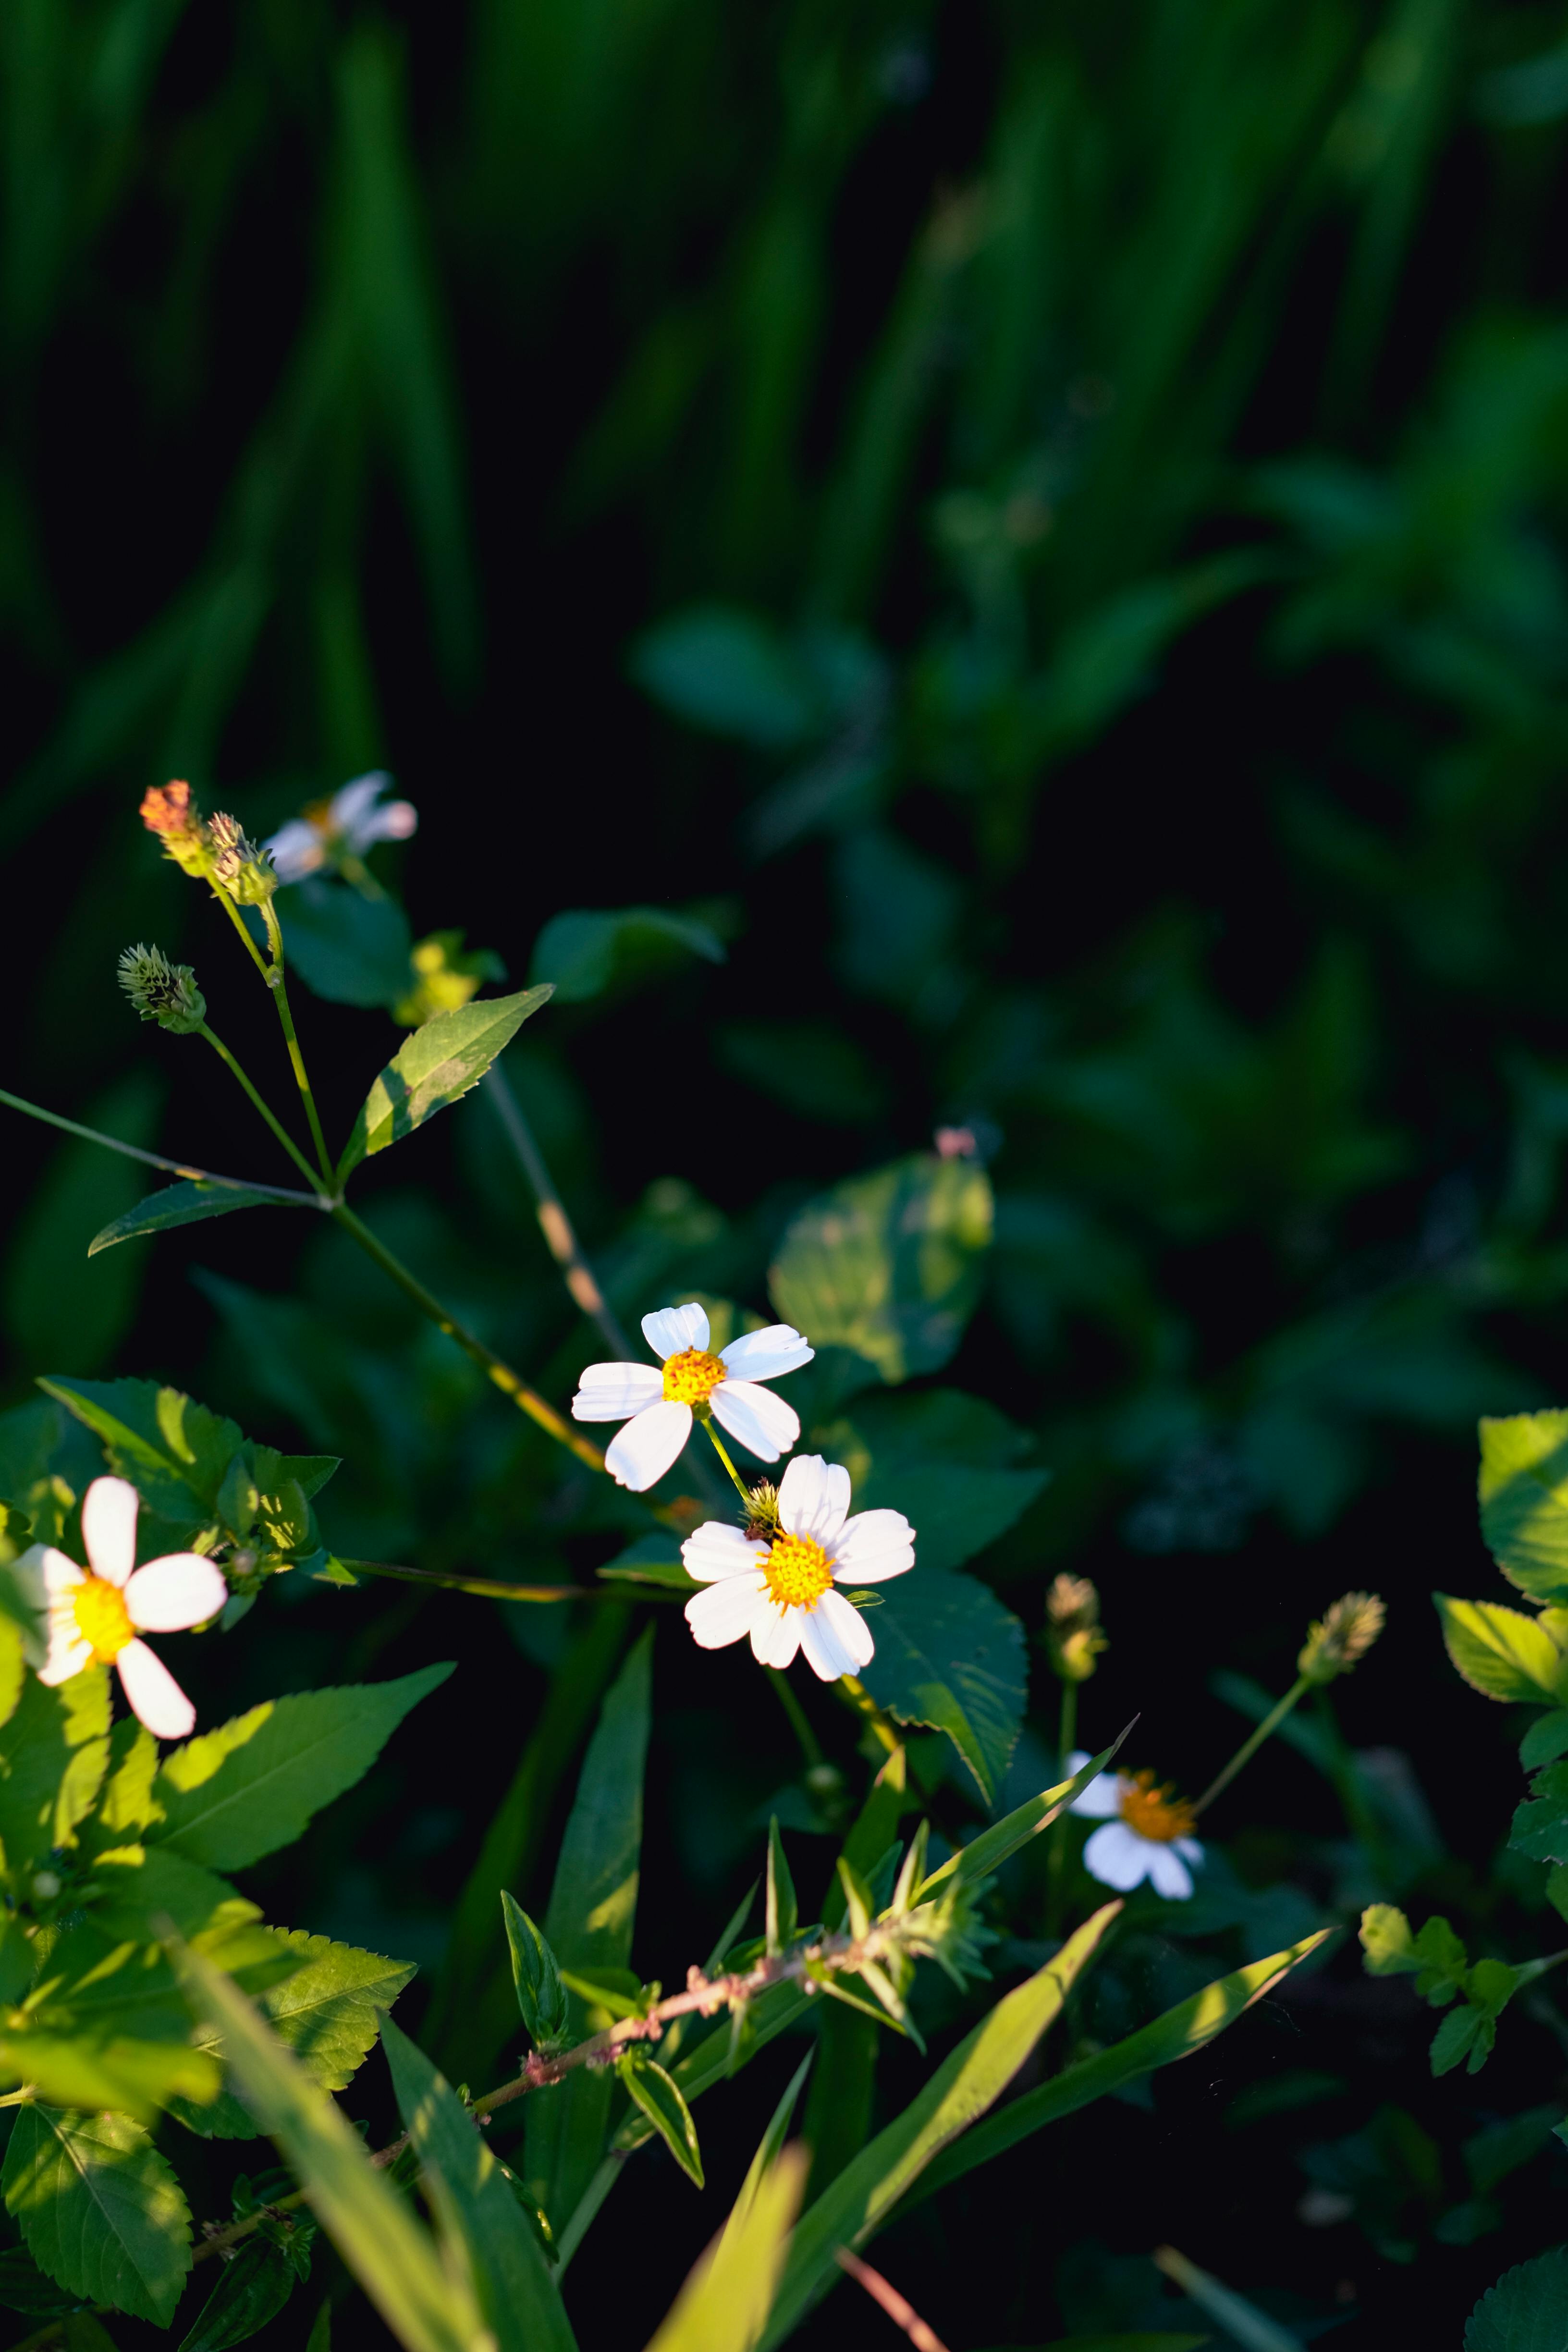 Với sắc tím trầm nước của mình, hoa Lốt chuột được xem là biểu tượng của tình yêu và trân trọng sự hy sinh. Để hiểu rõ hơn về giá trị ý nghĩa của chúng, hãy cùng tham quan những hình ảnh tuyệt đẹp về hoa Lốt chuột mà chúng tôi sẽ chia sẻ với bạn.